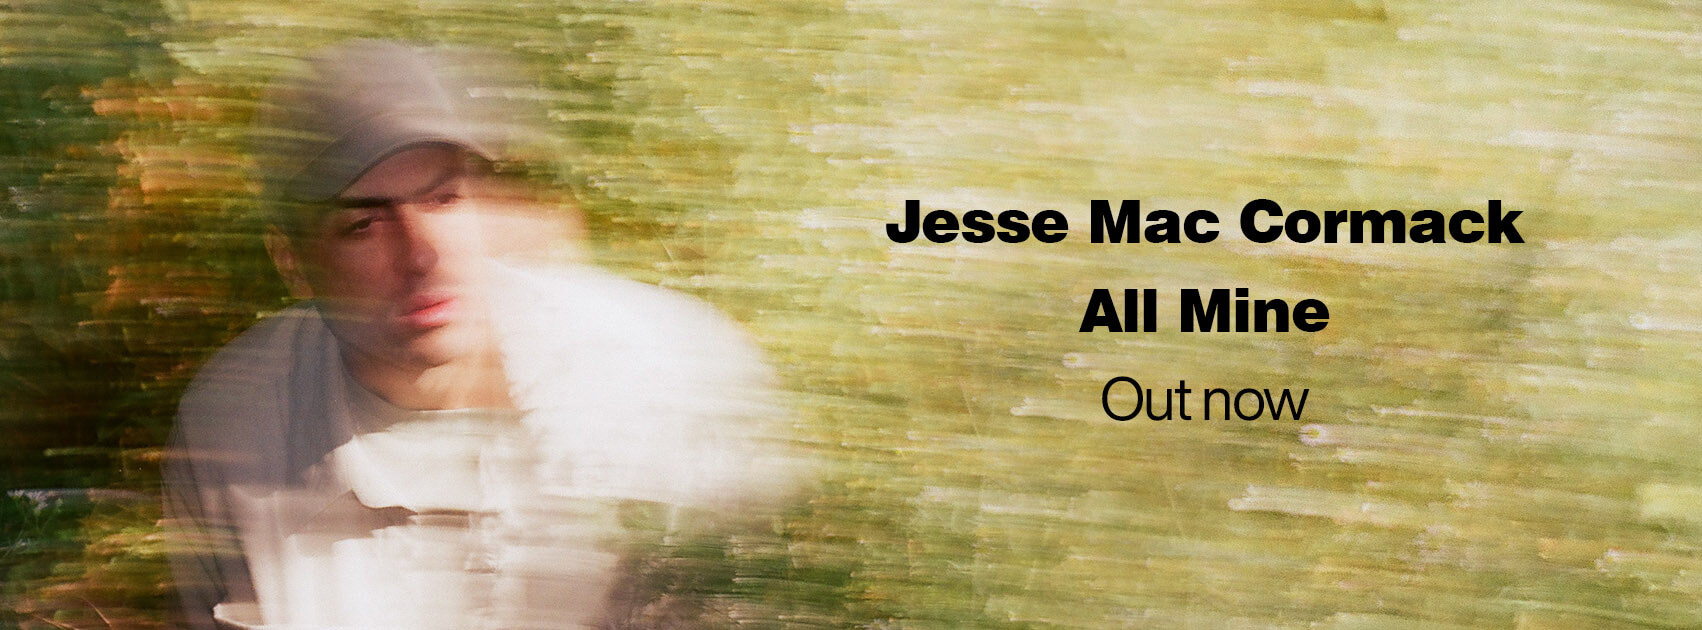 JesseMacCormack-AllMine-SCRWebsite-EN